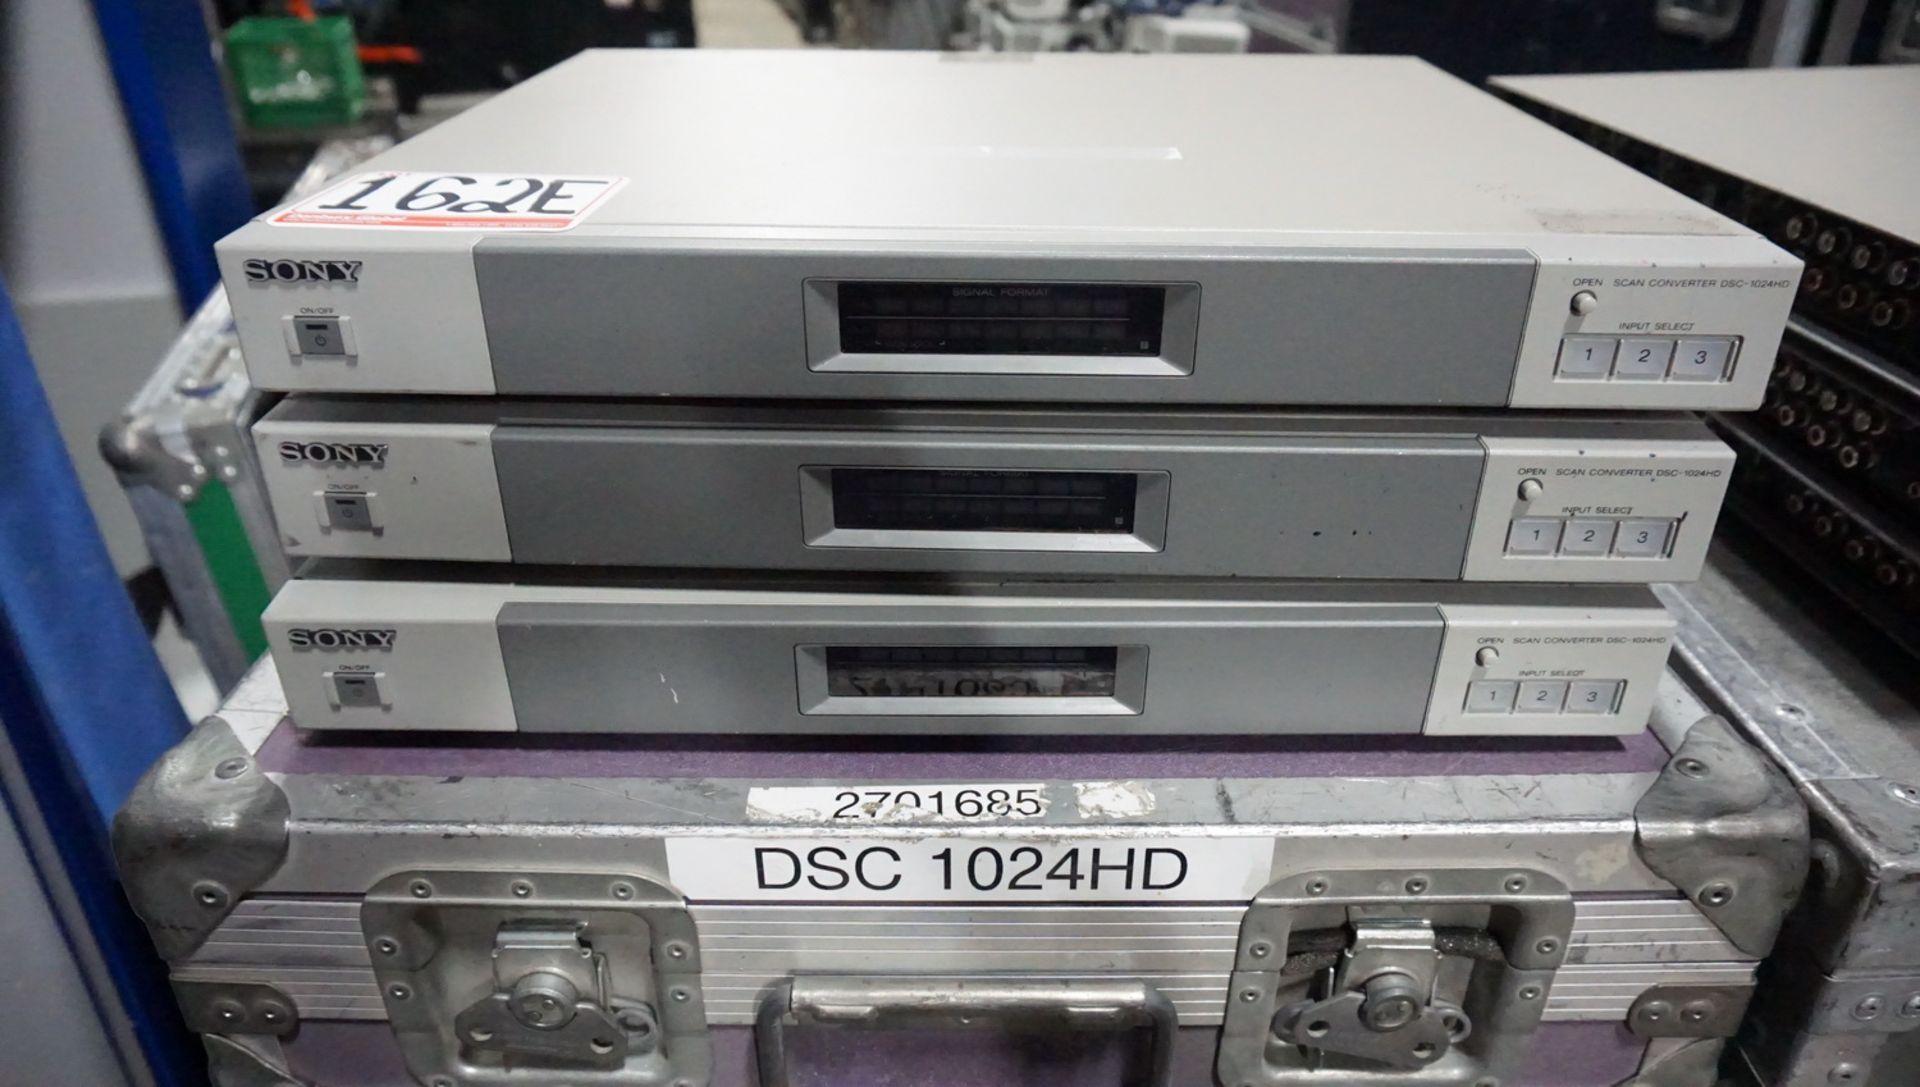 LOT - SONY DSC-1024HD SCAN CONVERTERS (3 UNITS)